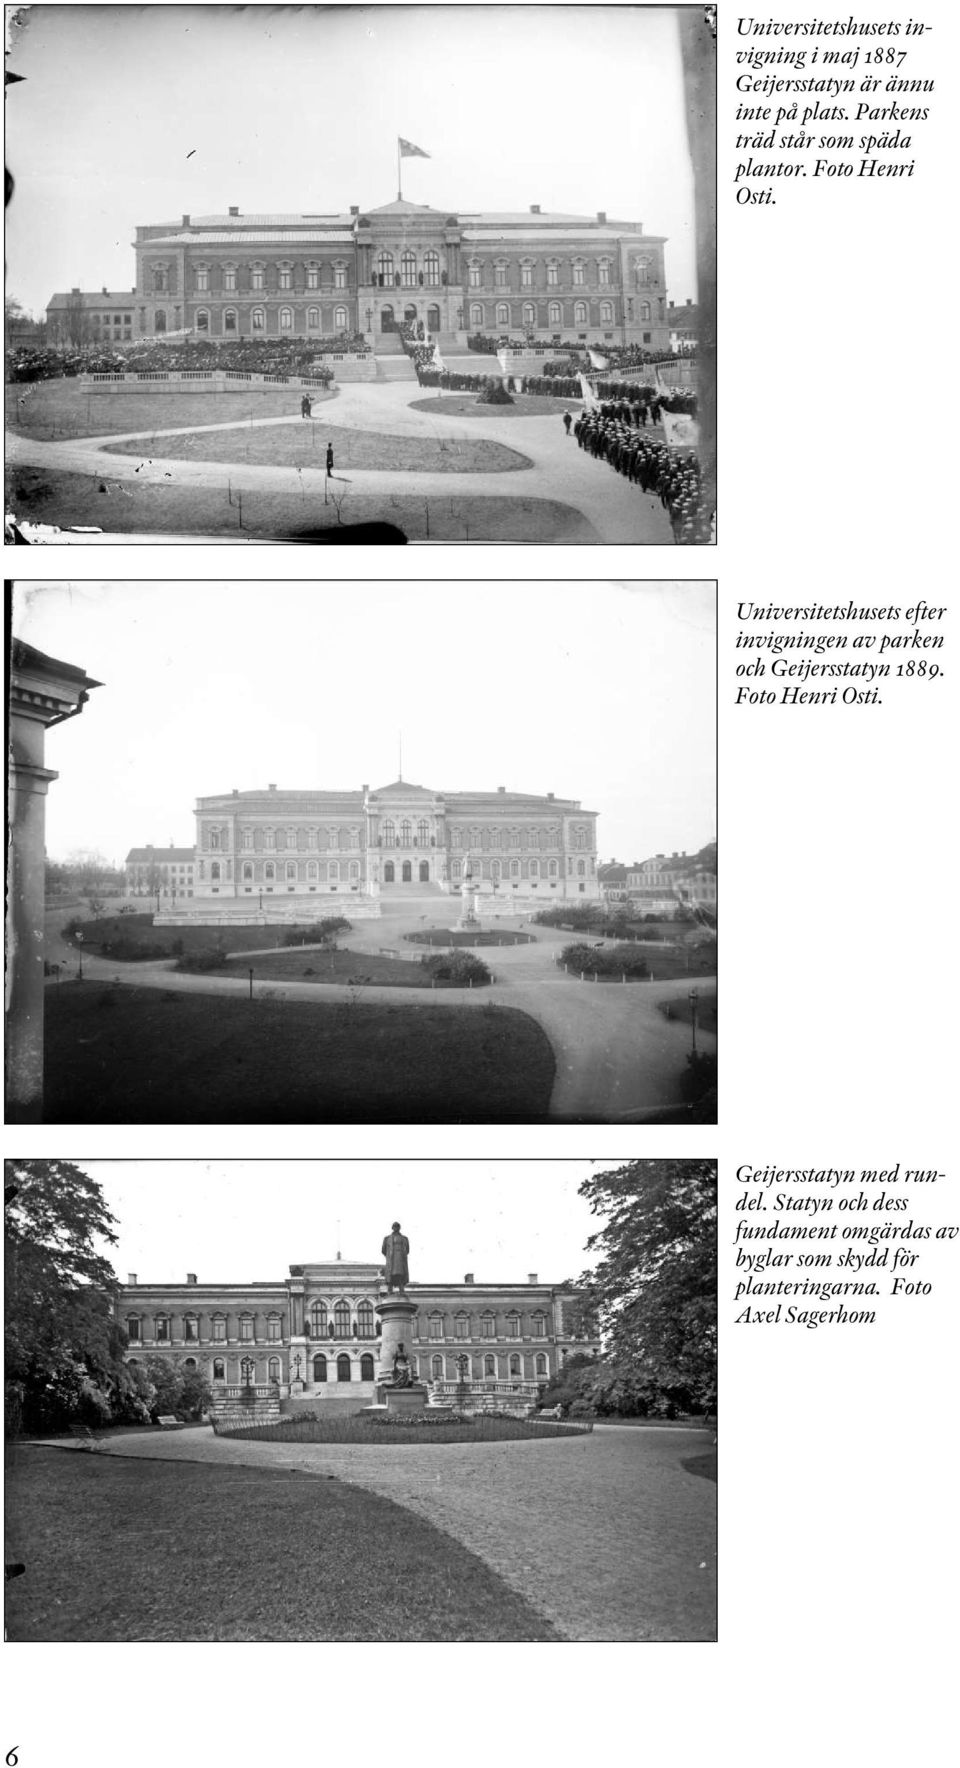 Universitetshusets efter invigningen av parken och Geijersstatyn 1889.